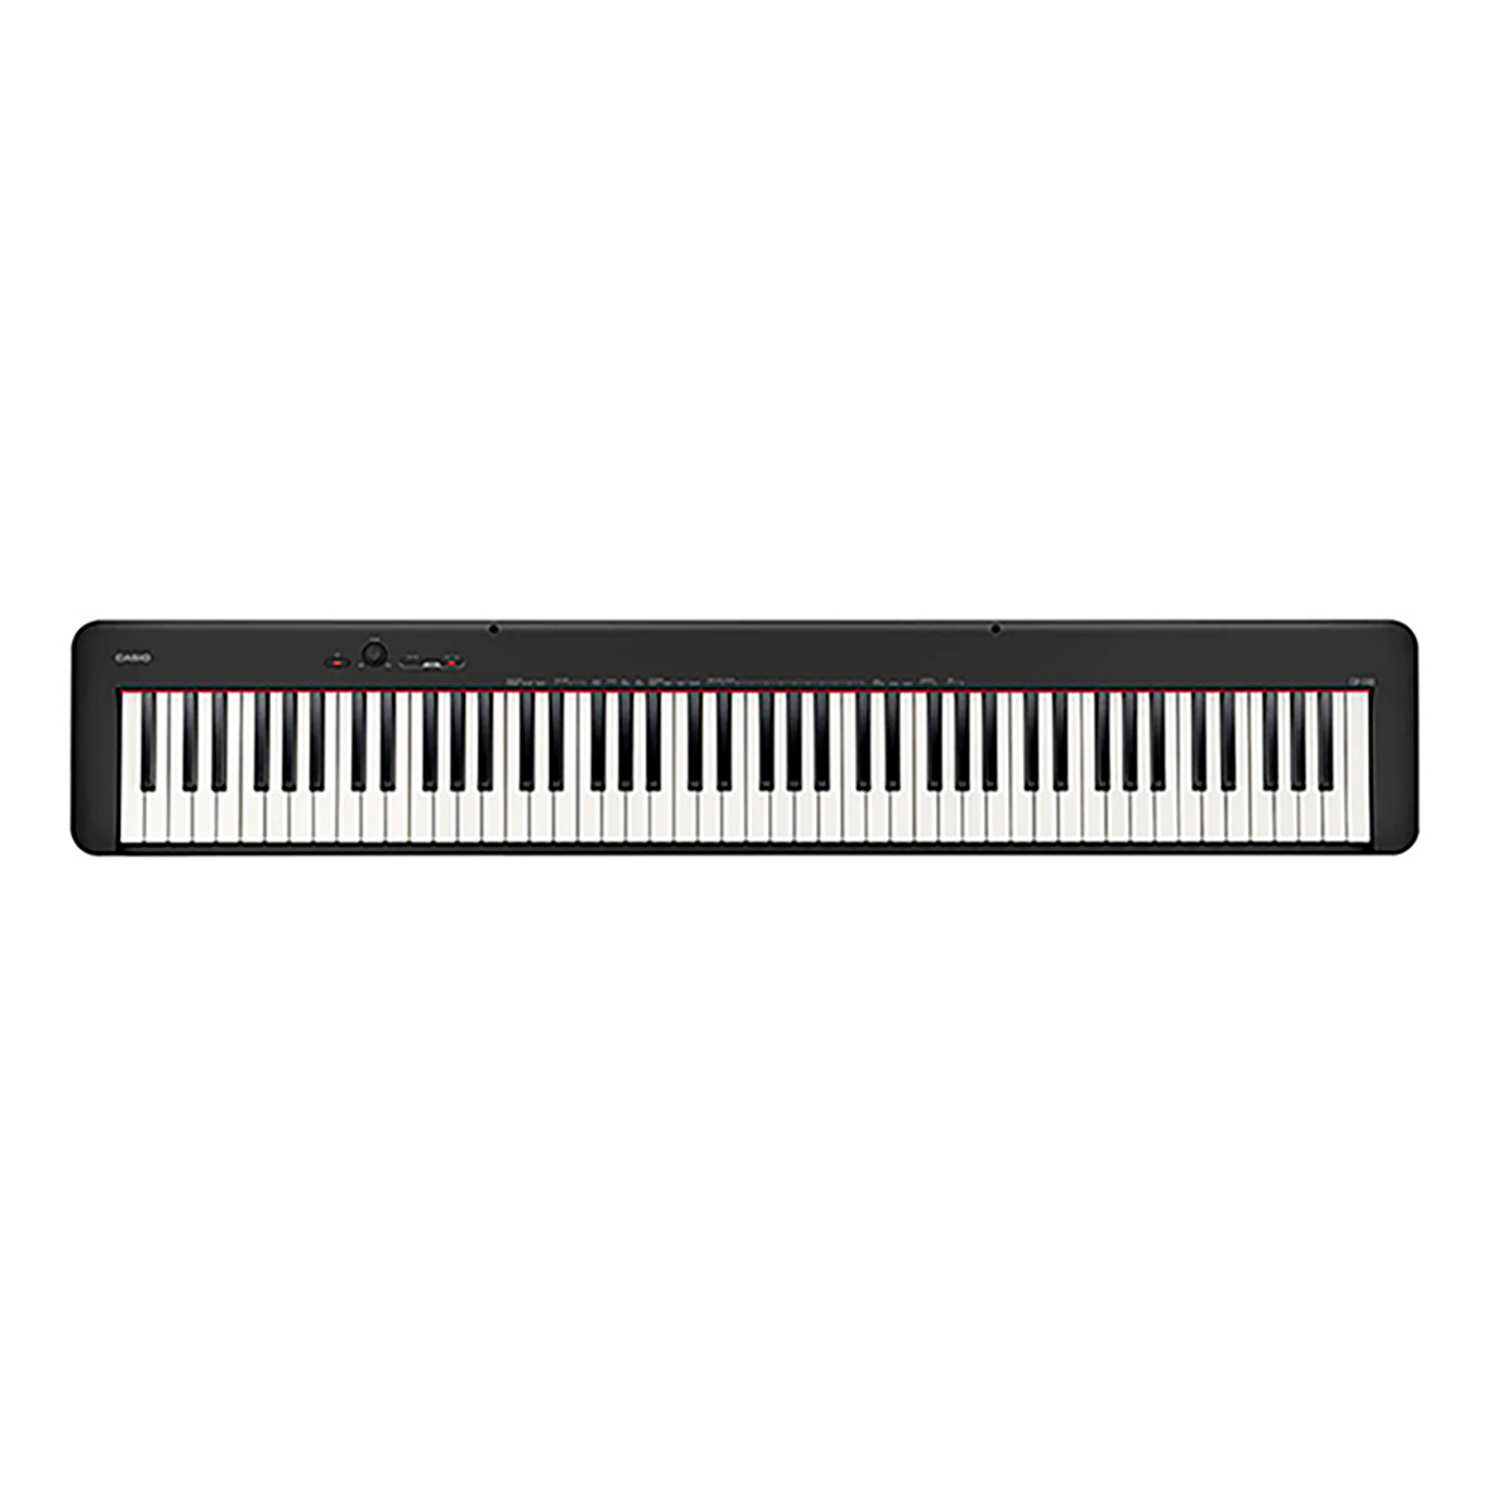 PIANO DIGITAL CDP-S110 DE CASIO